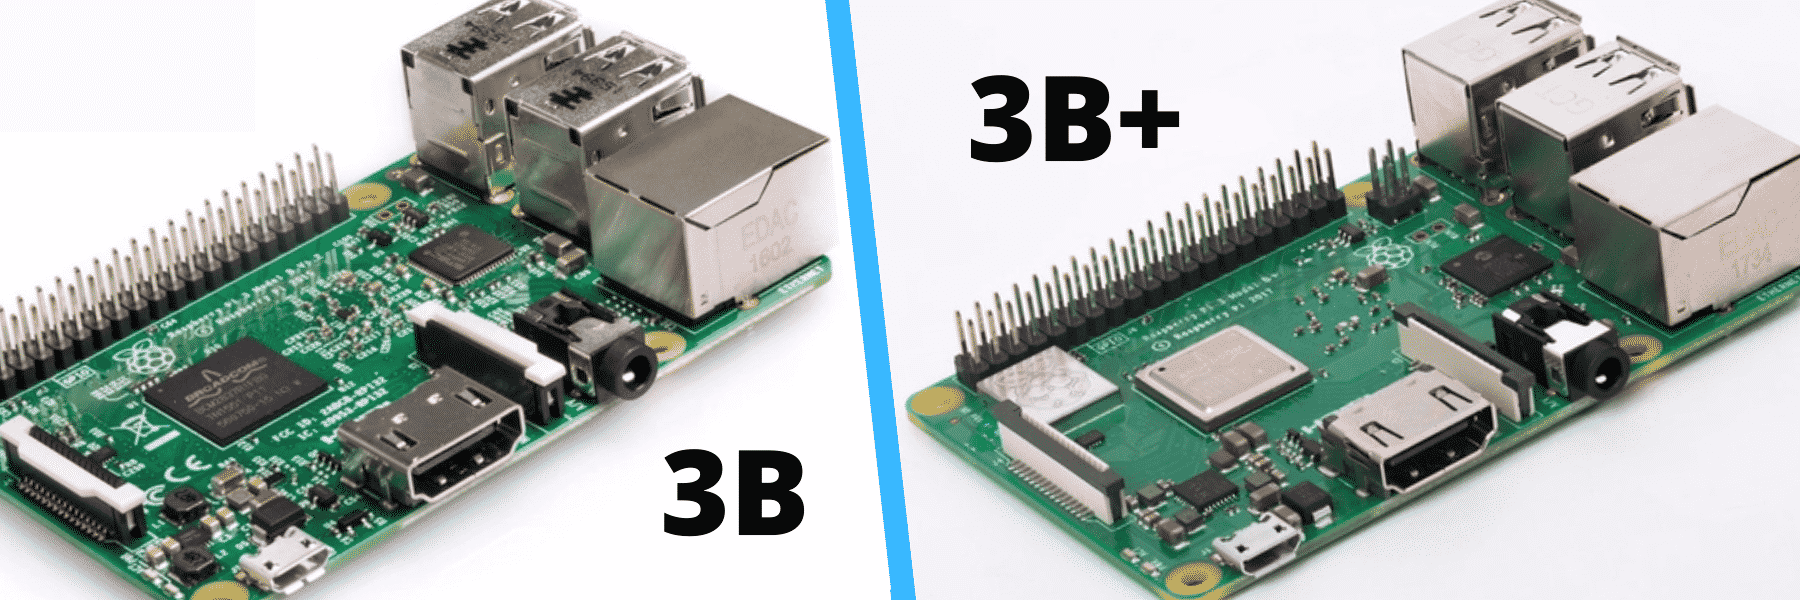 Verschil Raspberry Pi 3B & 3B+